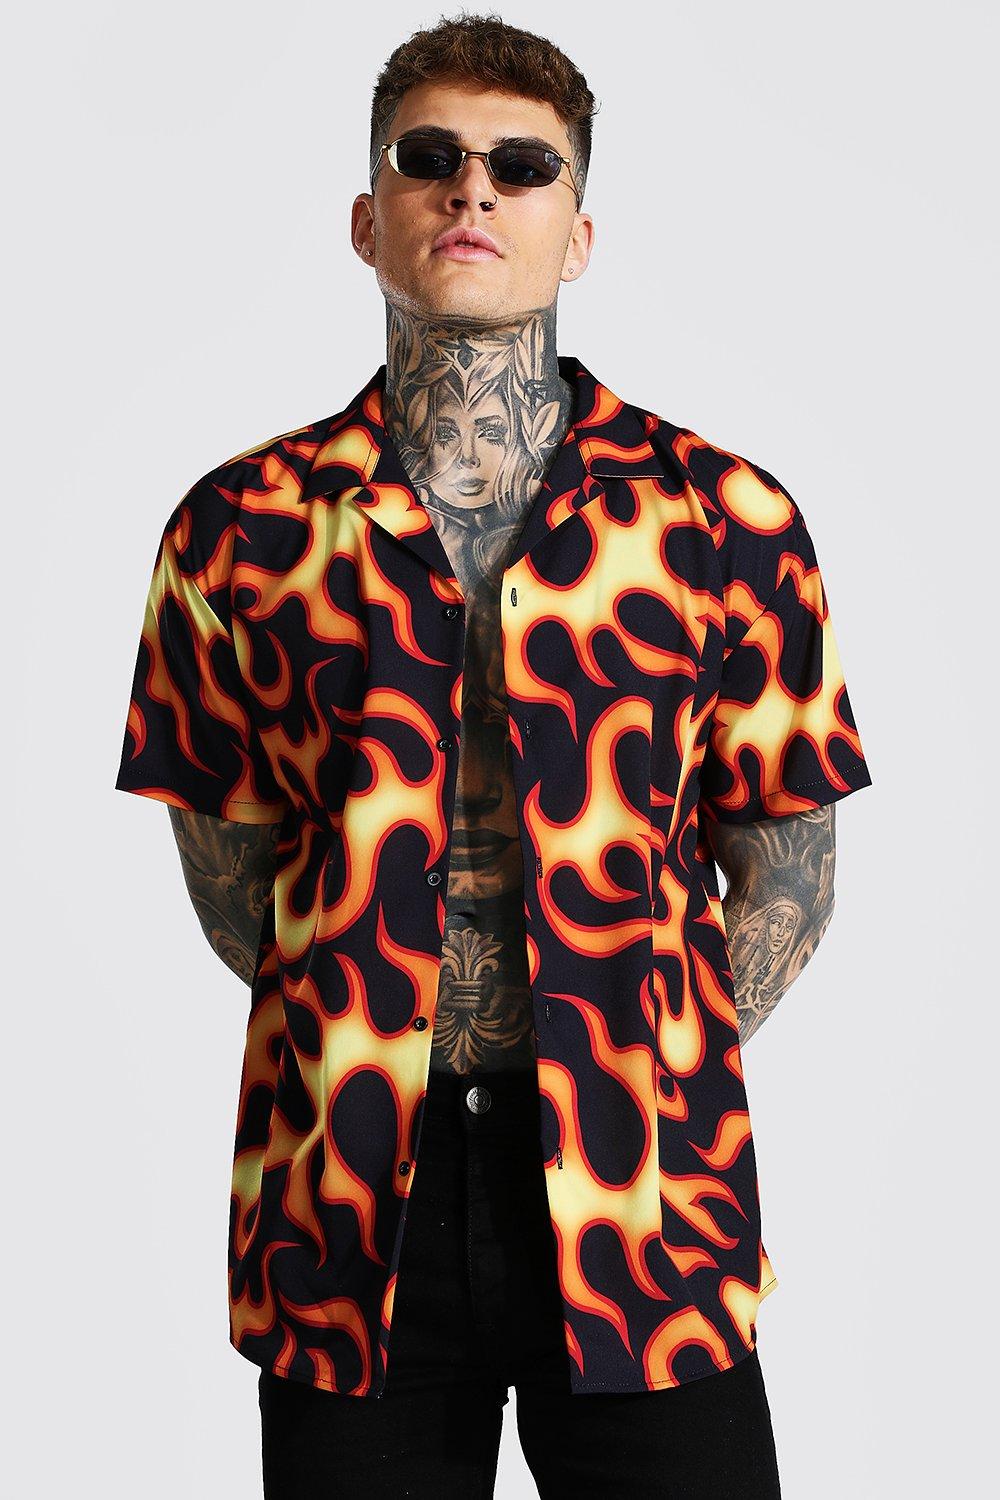 Short Sleeve Revere Flame Shirt